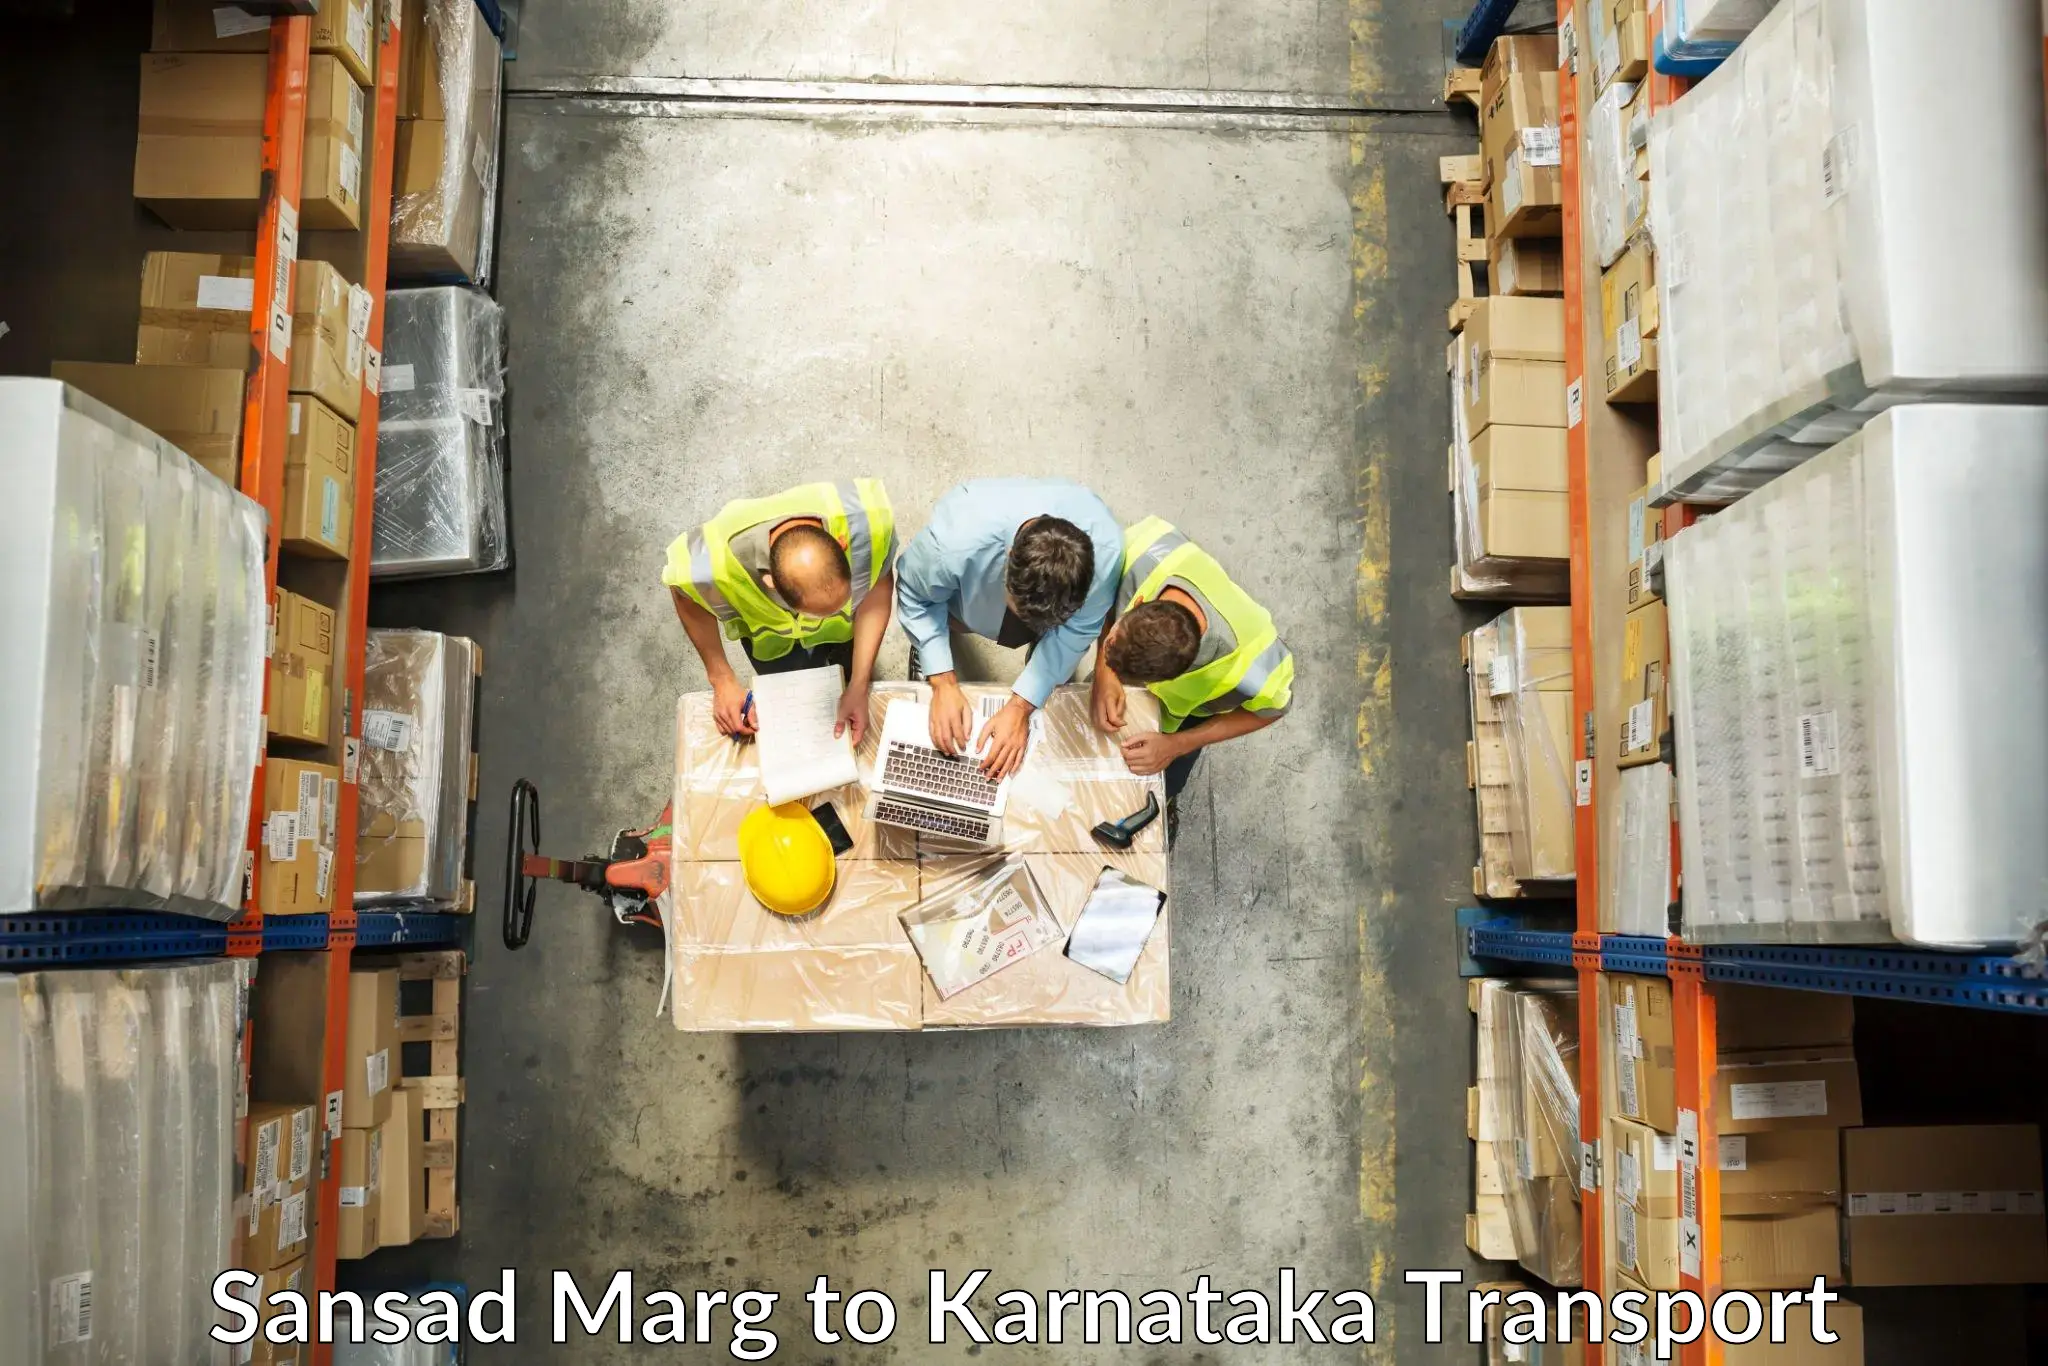 Furniture transport service Sansad Marg to Mundgod